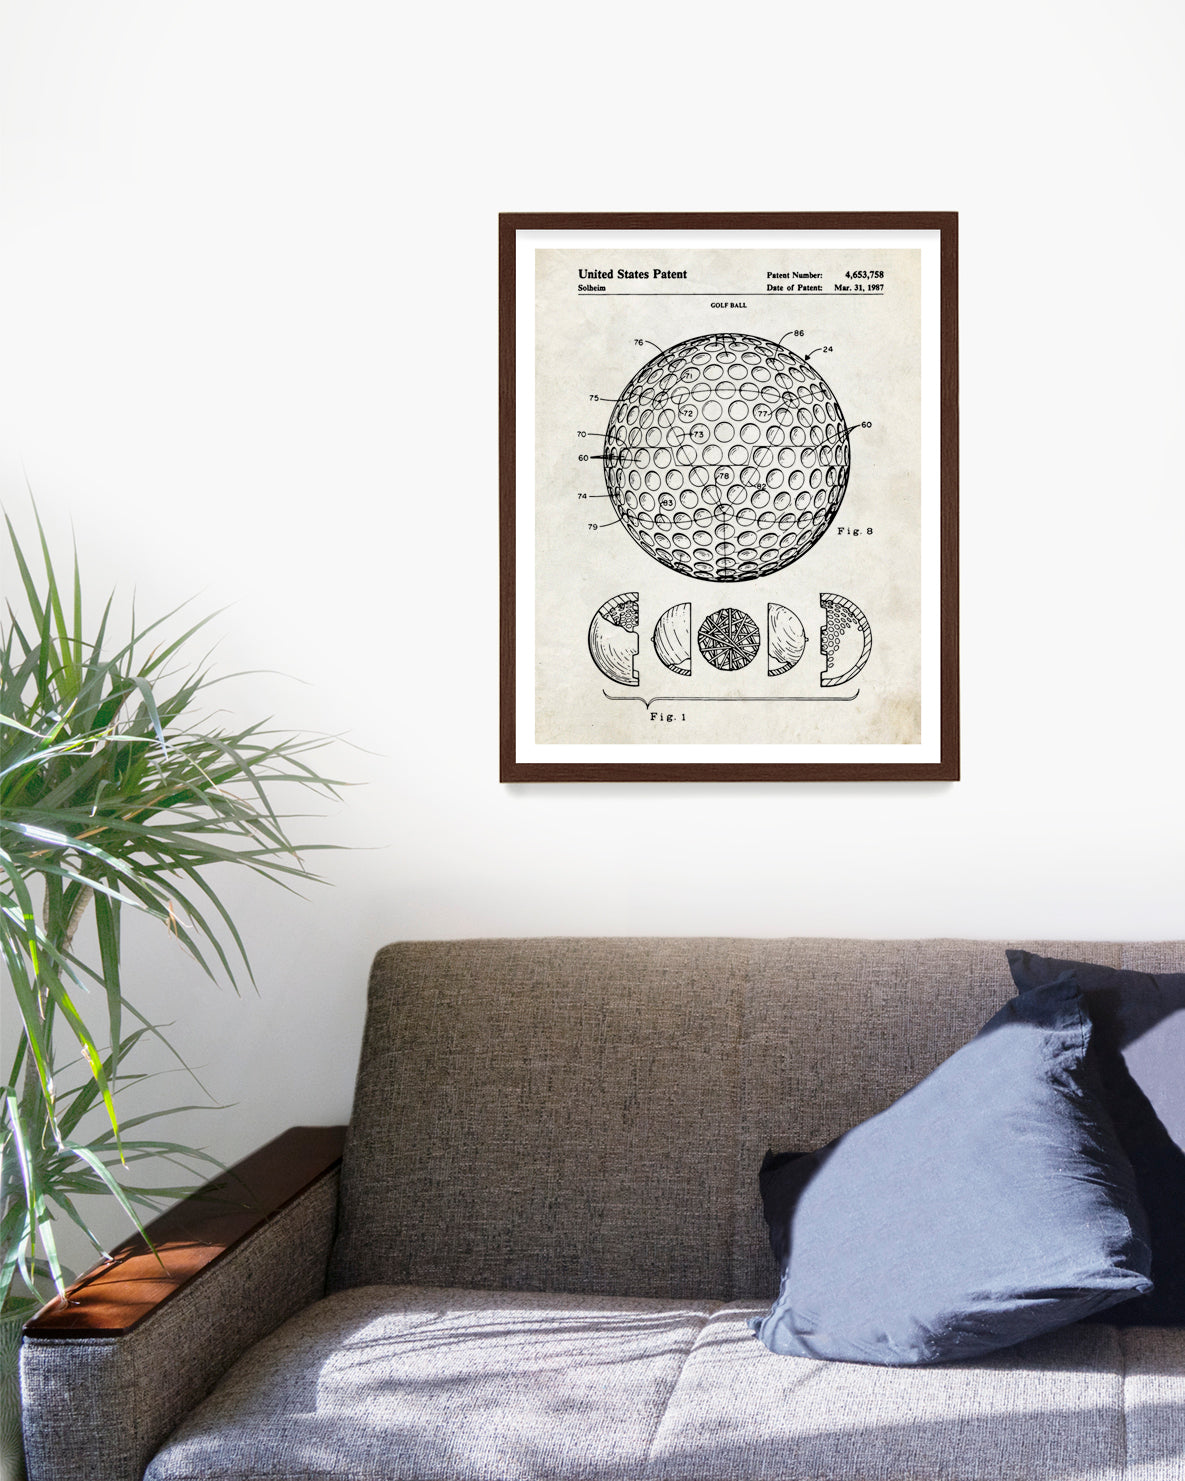 Golf Ball Patent Poster, Golf Wall Art